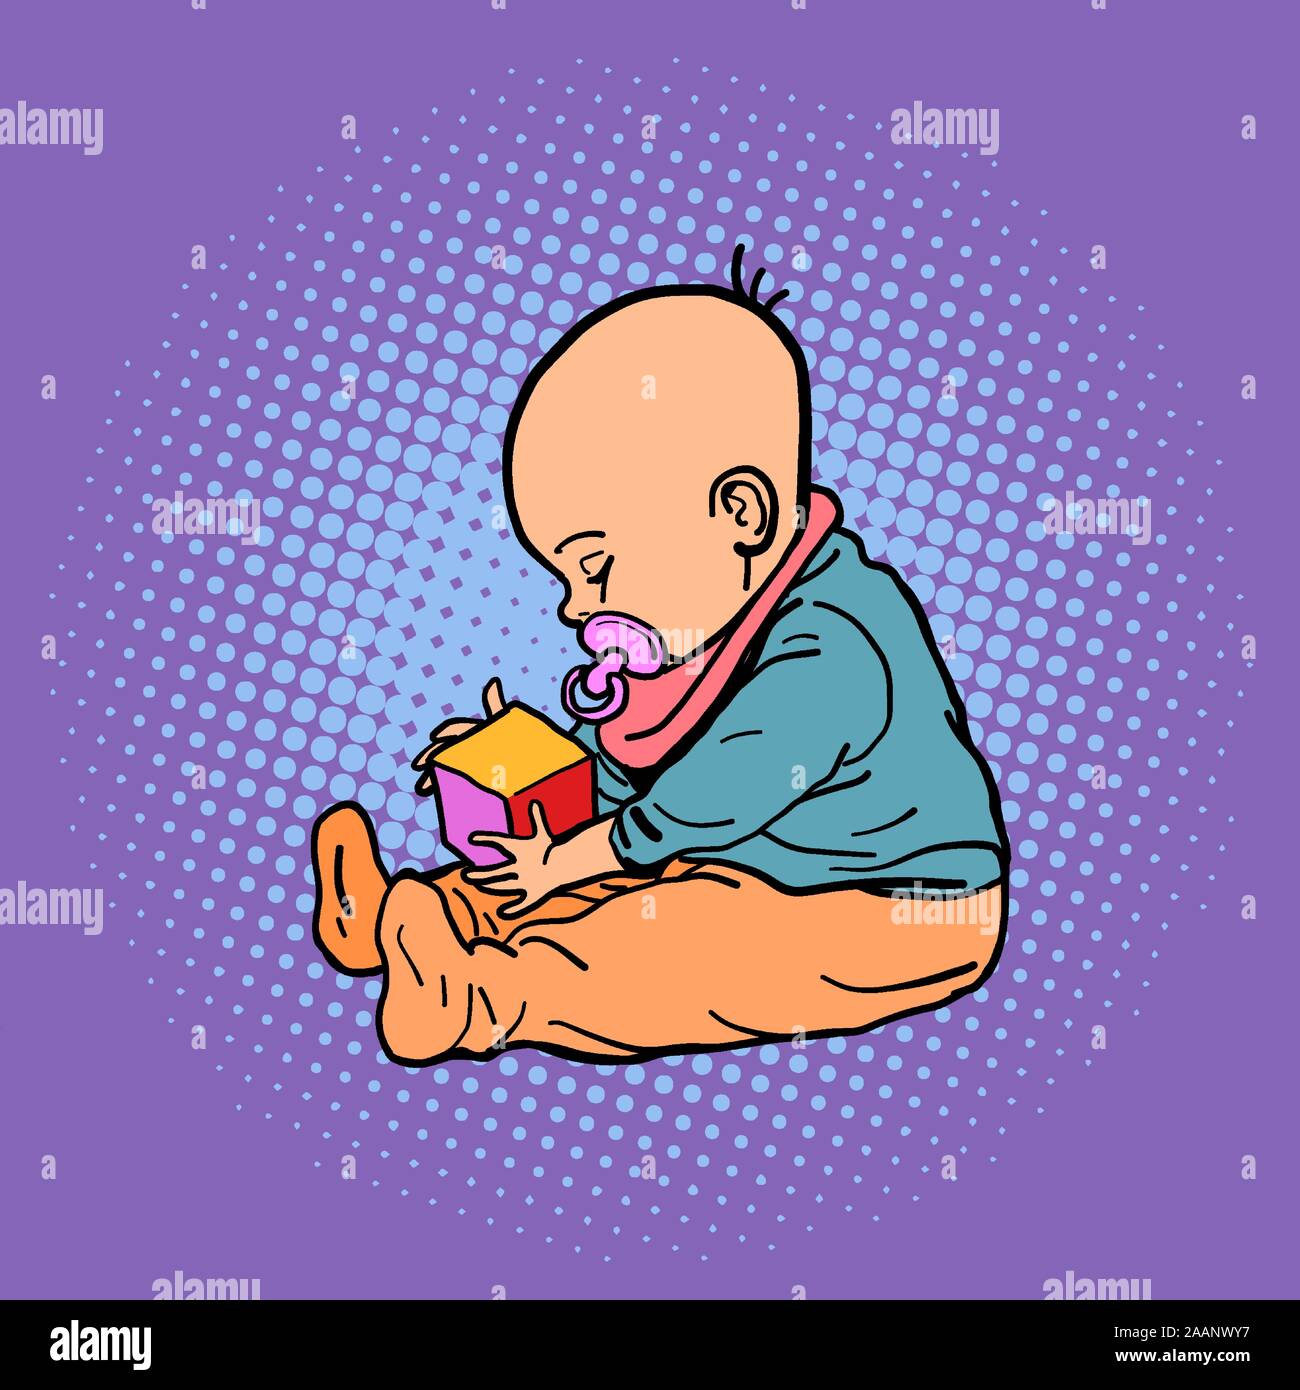 bambino piccolo che gioca con un cubo Illustrazione Vettoriale